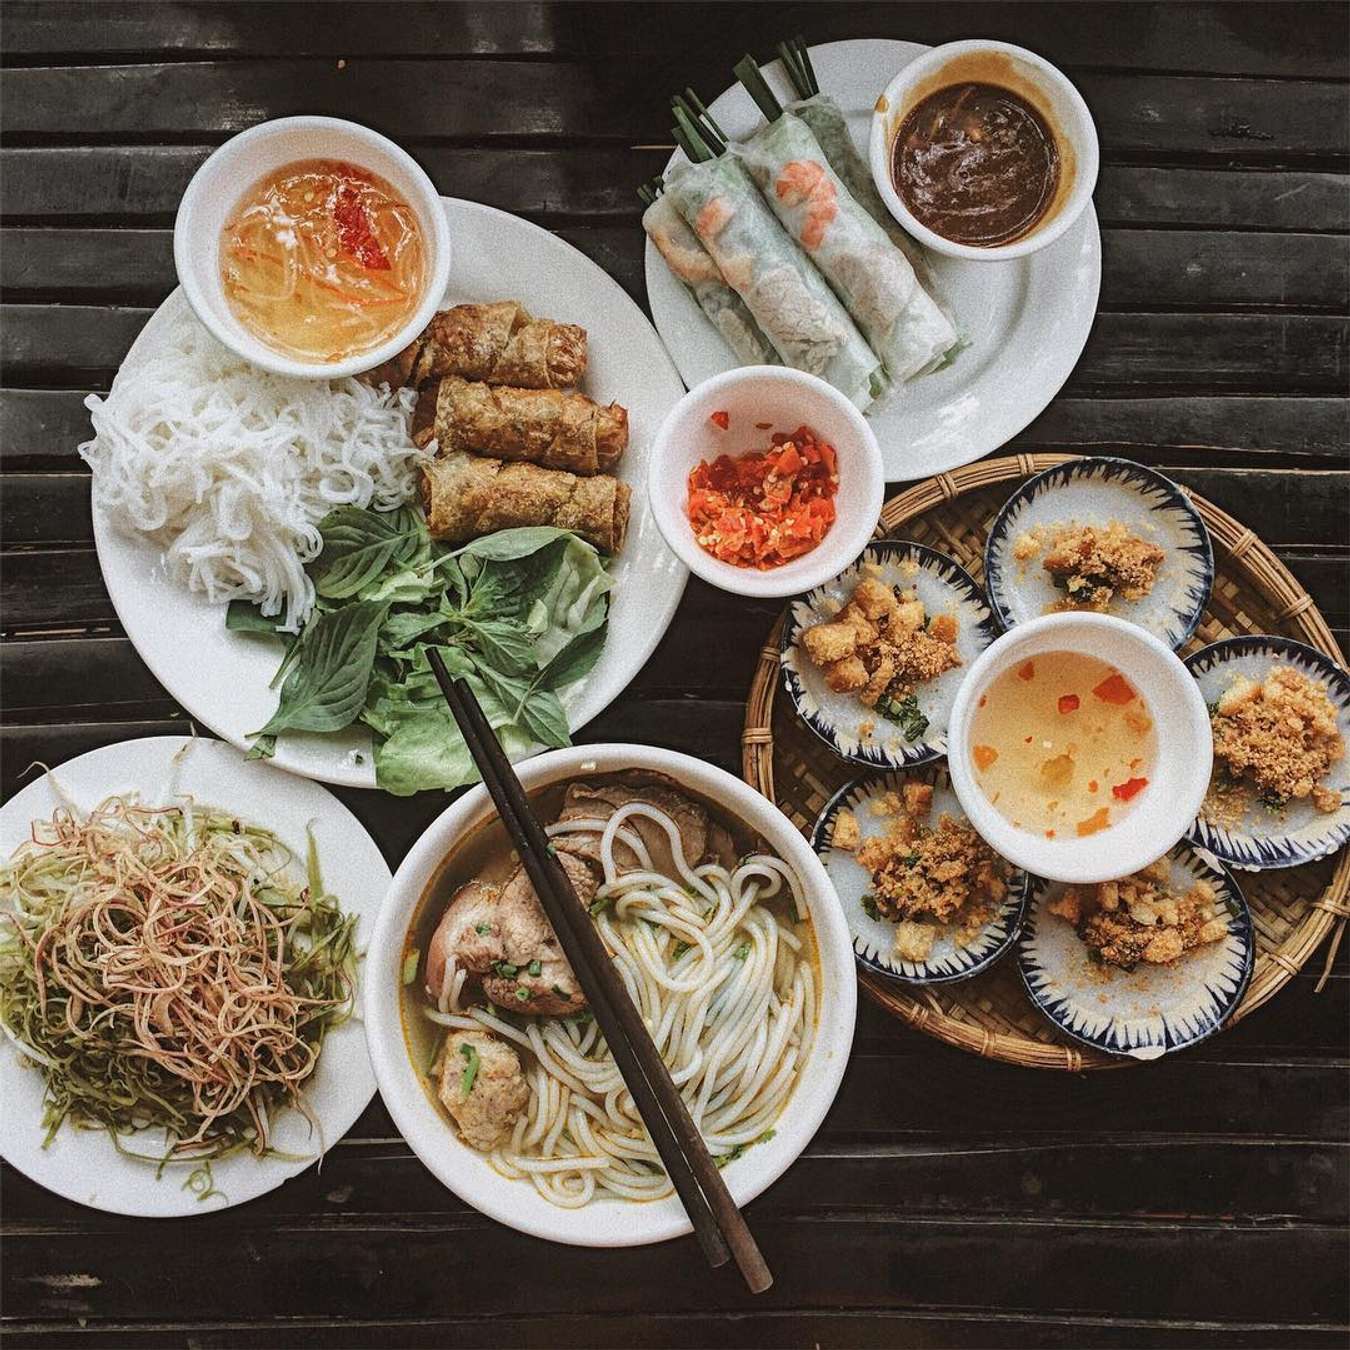 Truy Lùng Địa Chỉ Của 30 Món Ăn Ngon Sài Gòn (Phần 1) hình 1